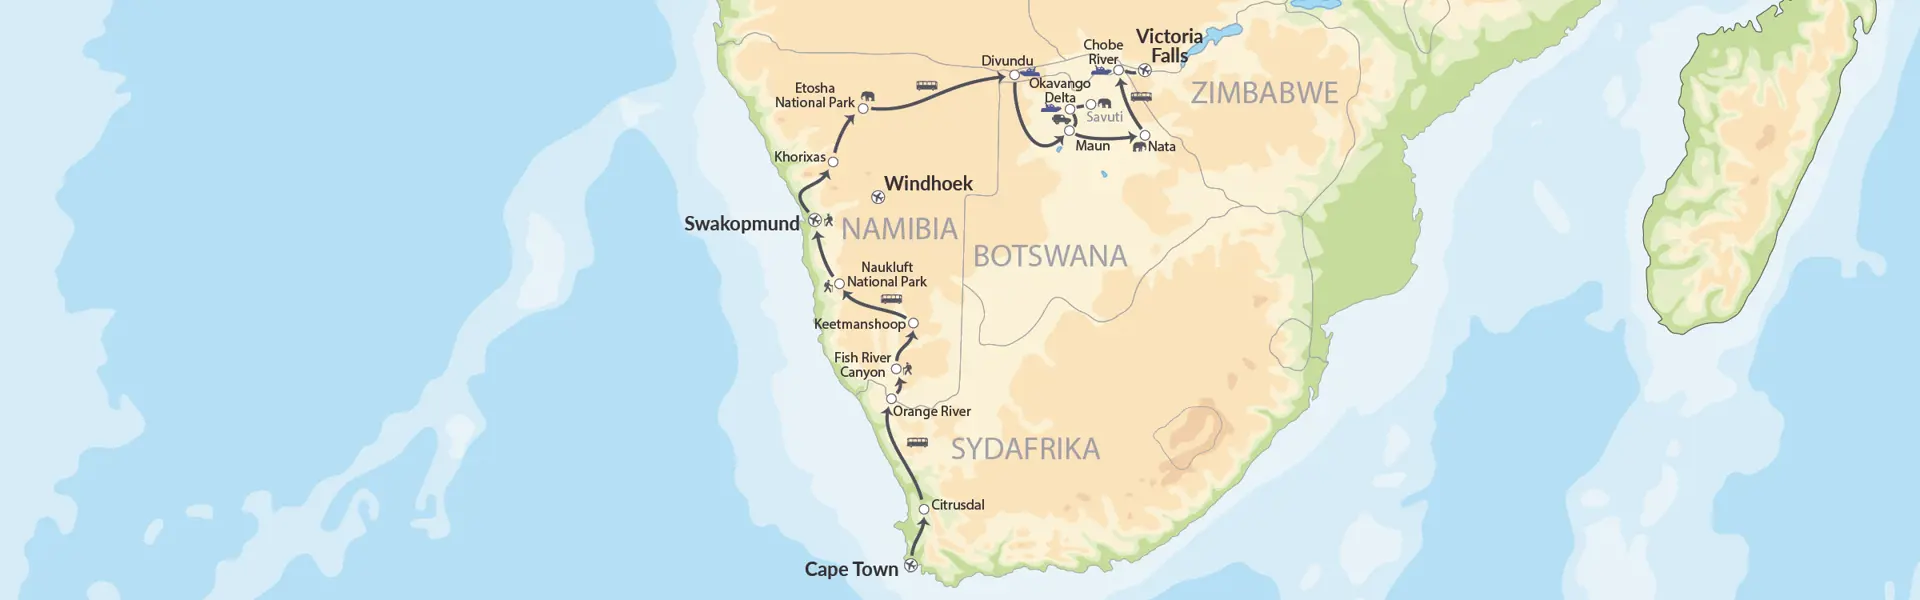 Nomad Tours Cape Town Vioctoria Falls Map